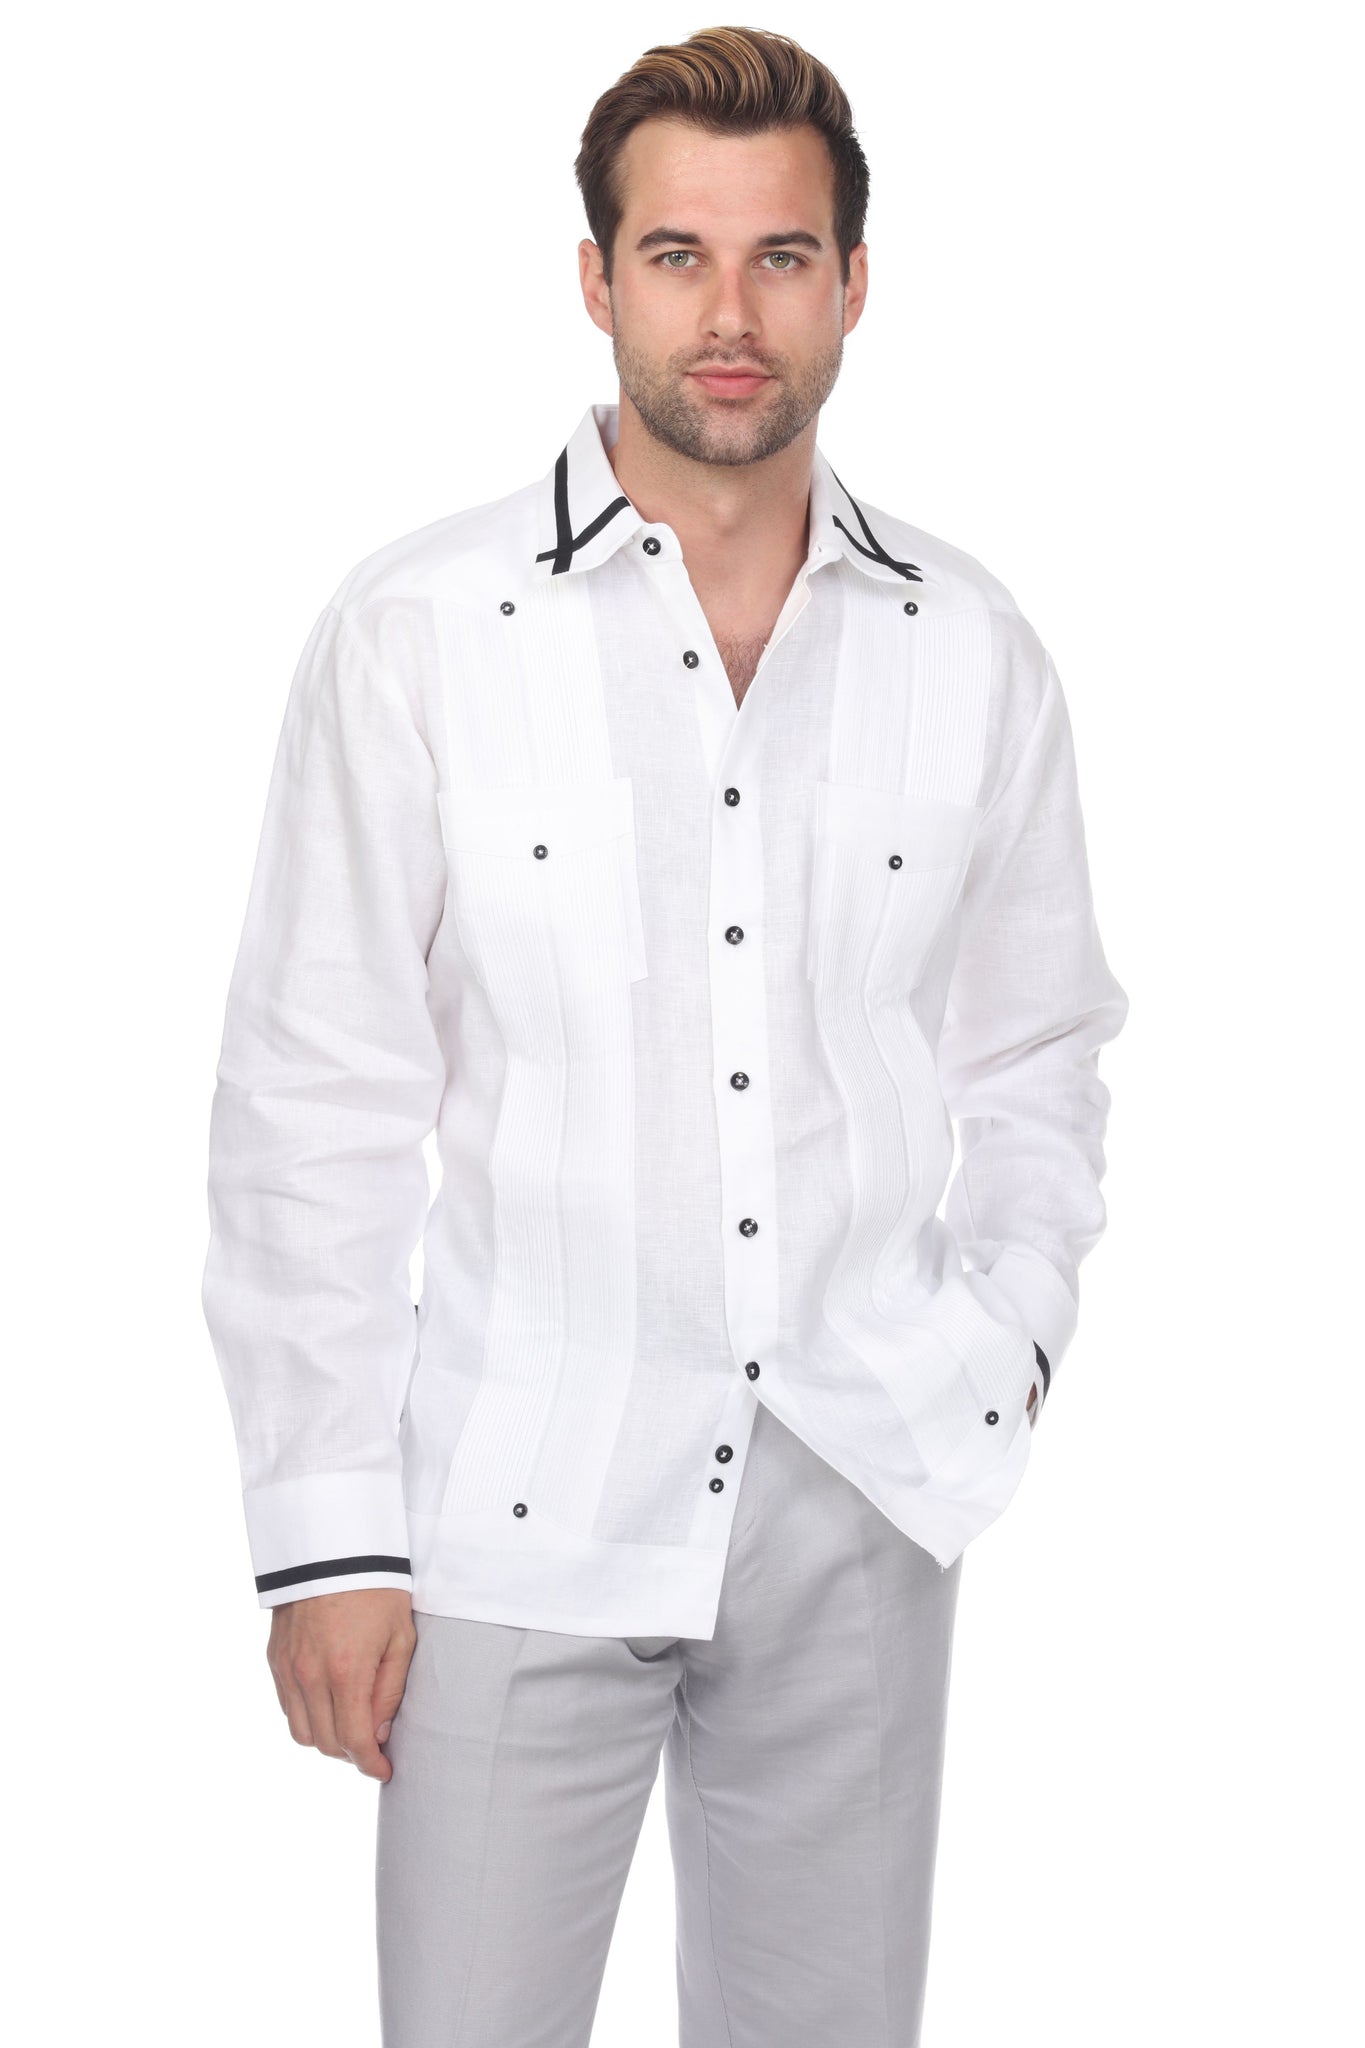 Mojito Men's Guayabera Shirt Long Sleeve 100% Linen with Stylish Stripe Trim - Mojito Collection - Guayabera, Long Sleeve Shirt, Mens Shirt, Mojito Guayabera Shirt